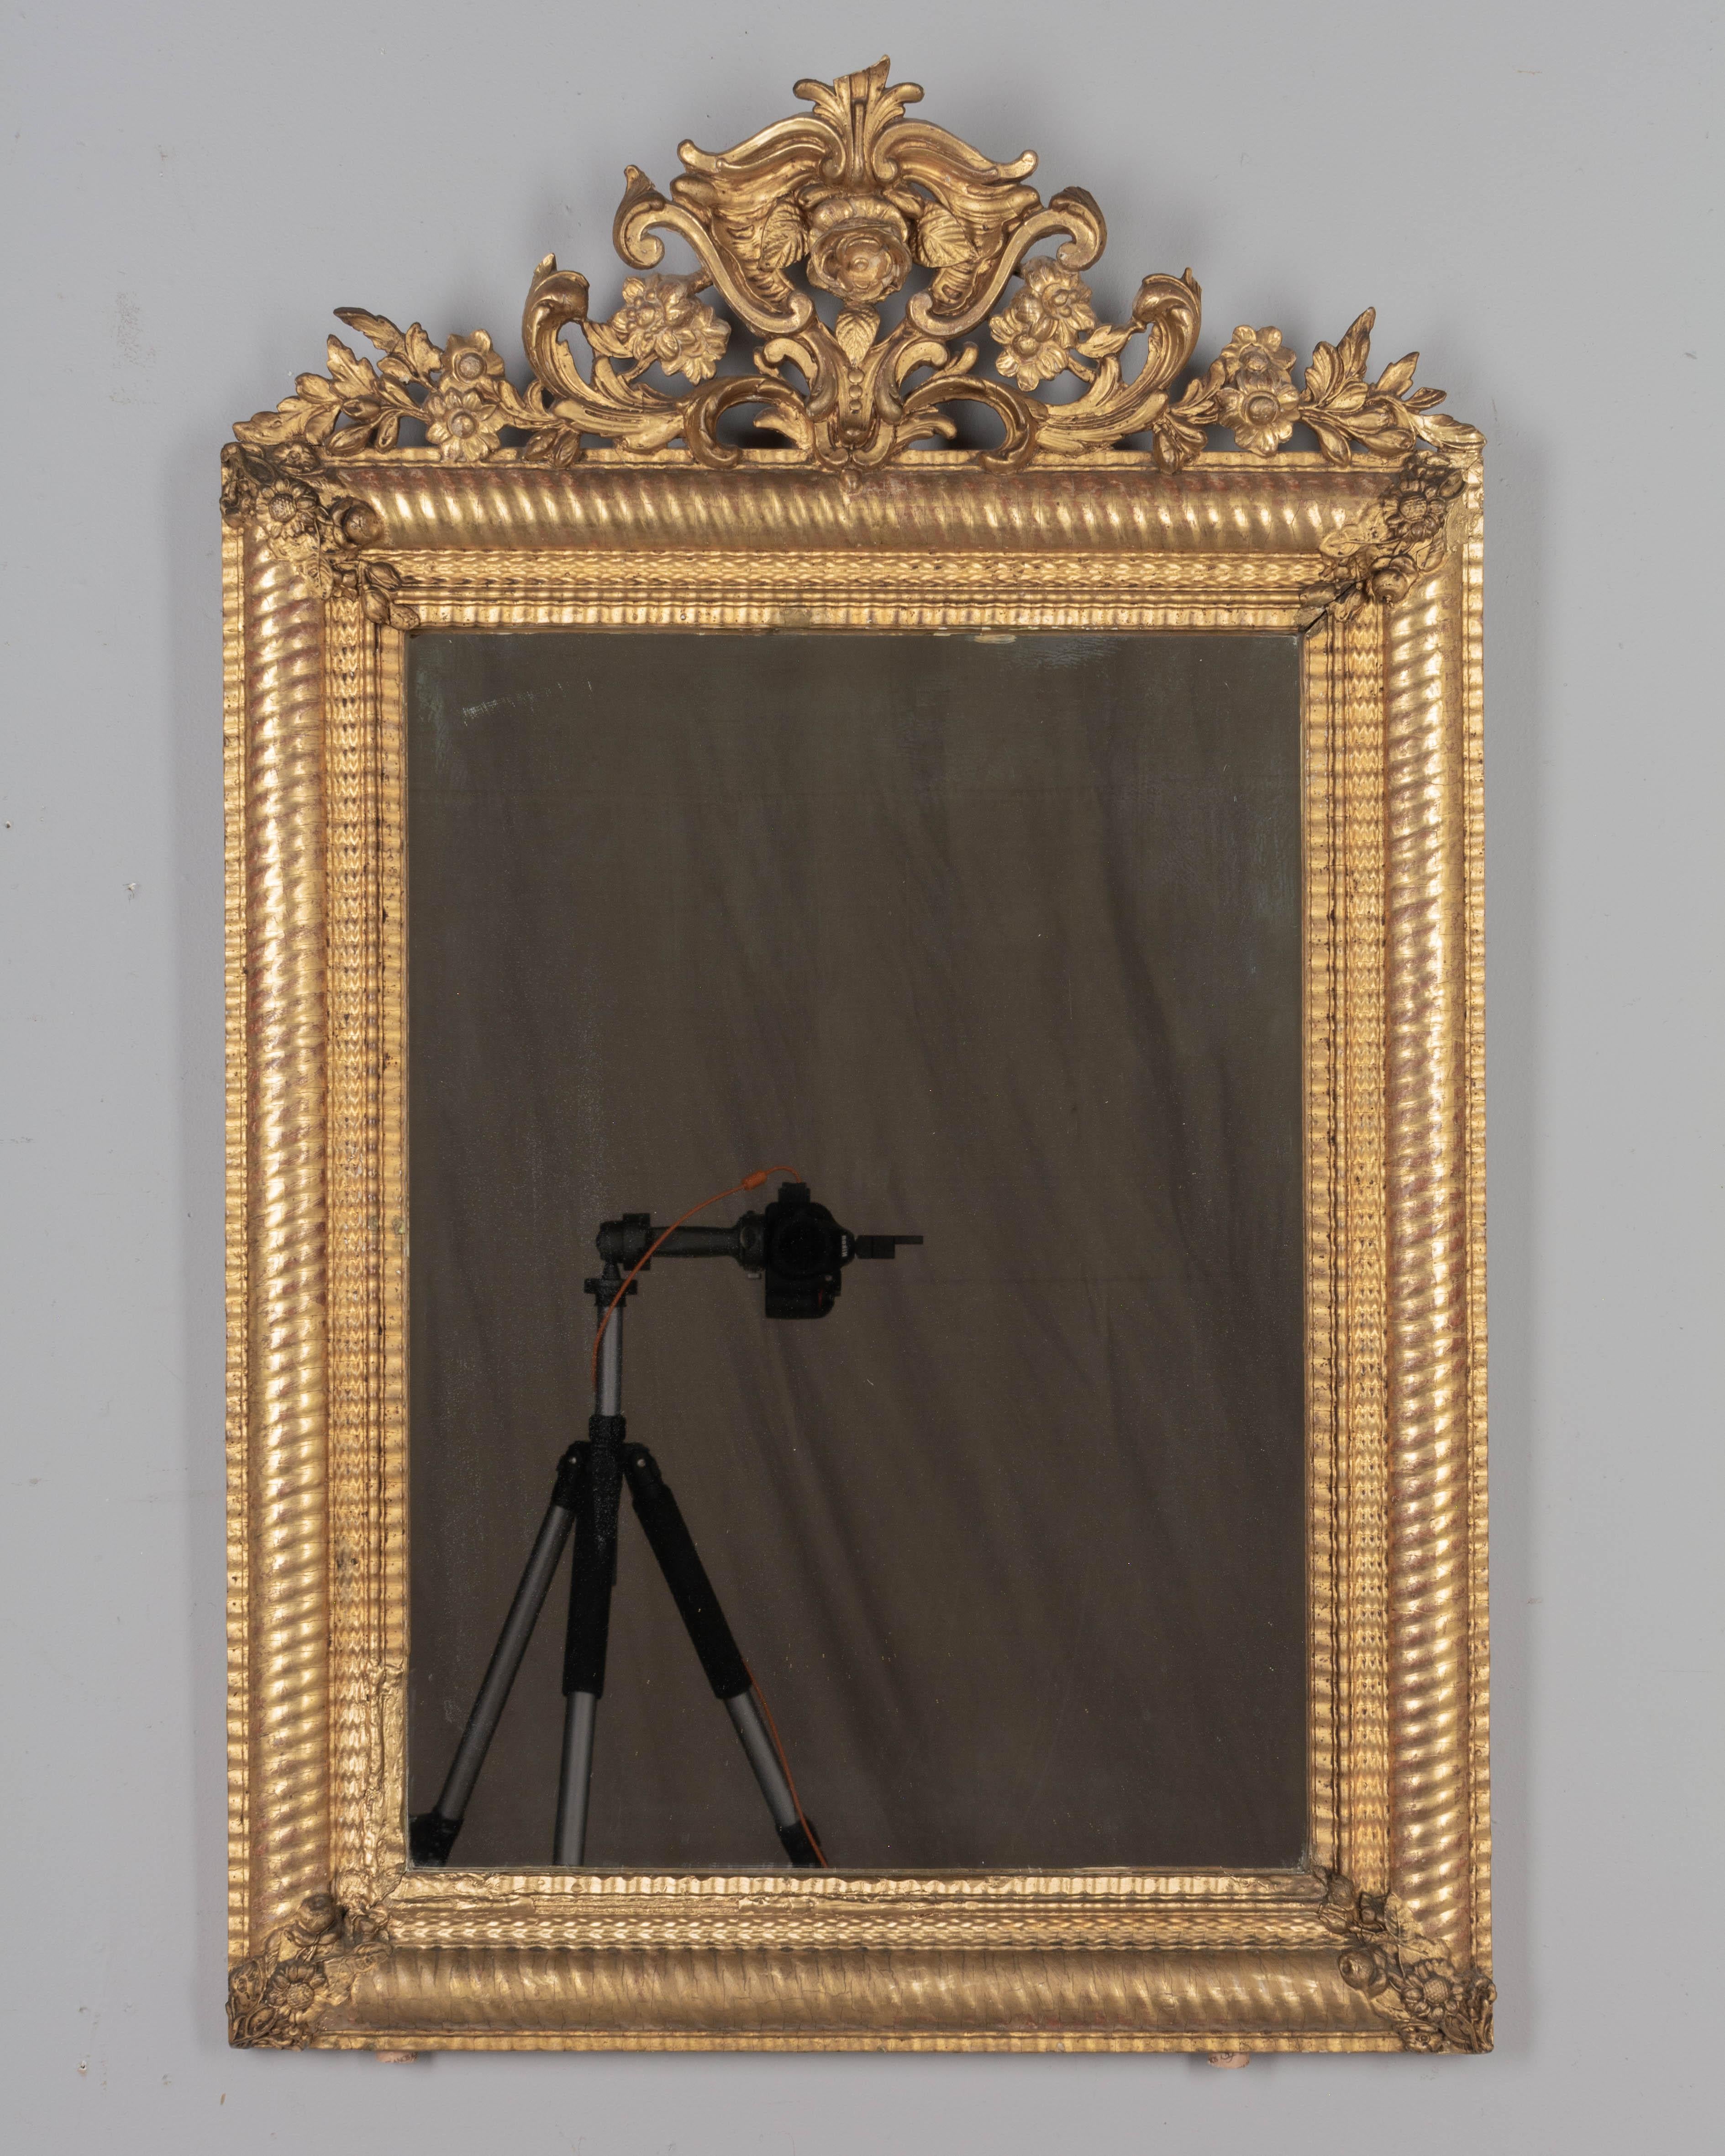 Miroir doré de style Louis XV du XIXe siècle, avec une crête florale sculpturale et des décorations d'angle. Jolis détails en trois dimensions. Finition dorée chaude avec quelques pertes et retouches. Miroir original. Restaurations sur le bord